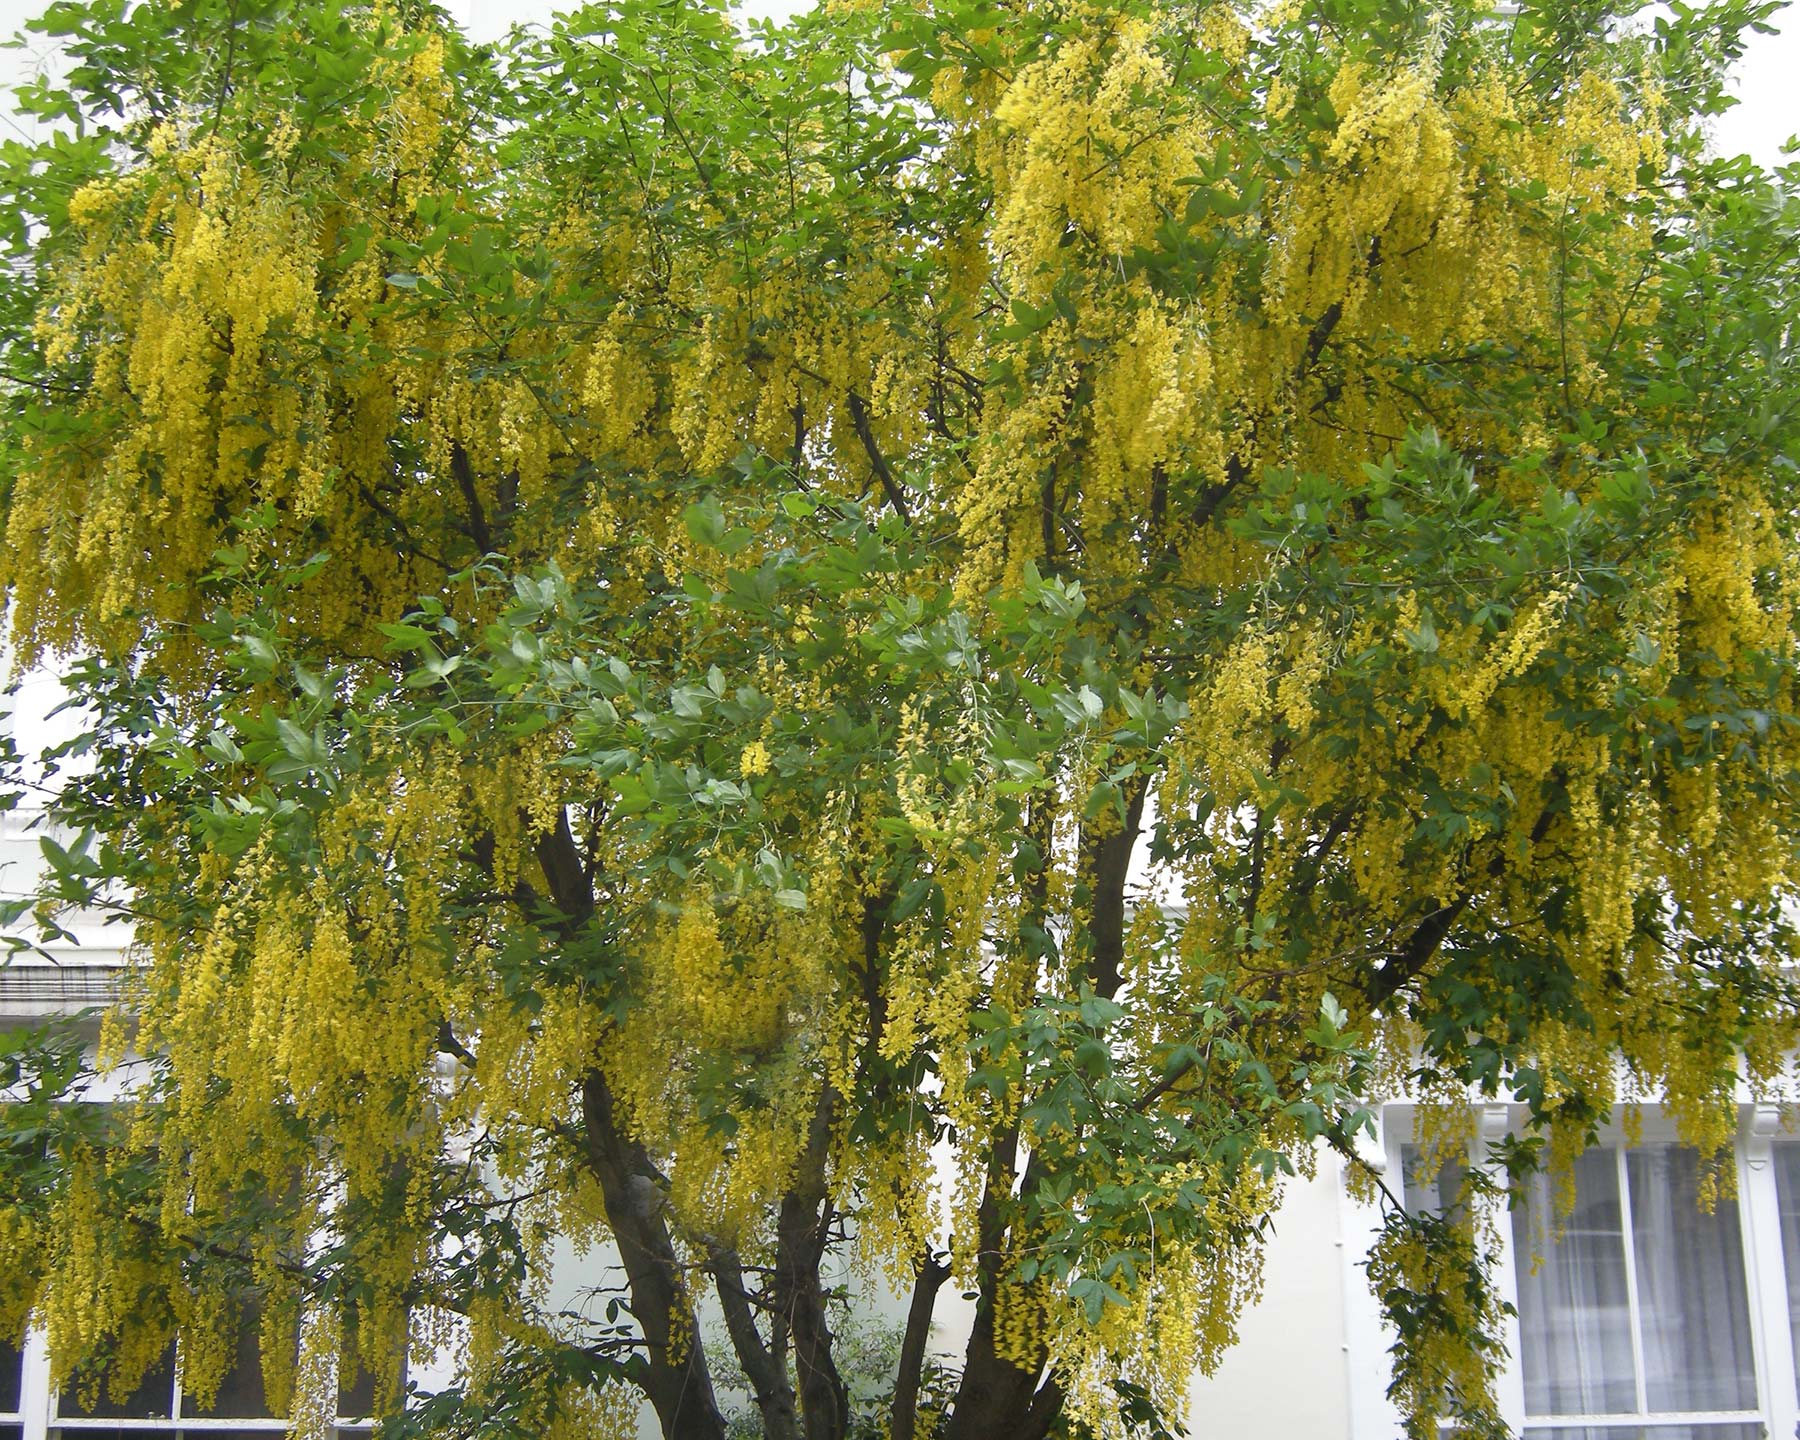 Laburnum wateri Vosii - Golden Chain Tree